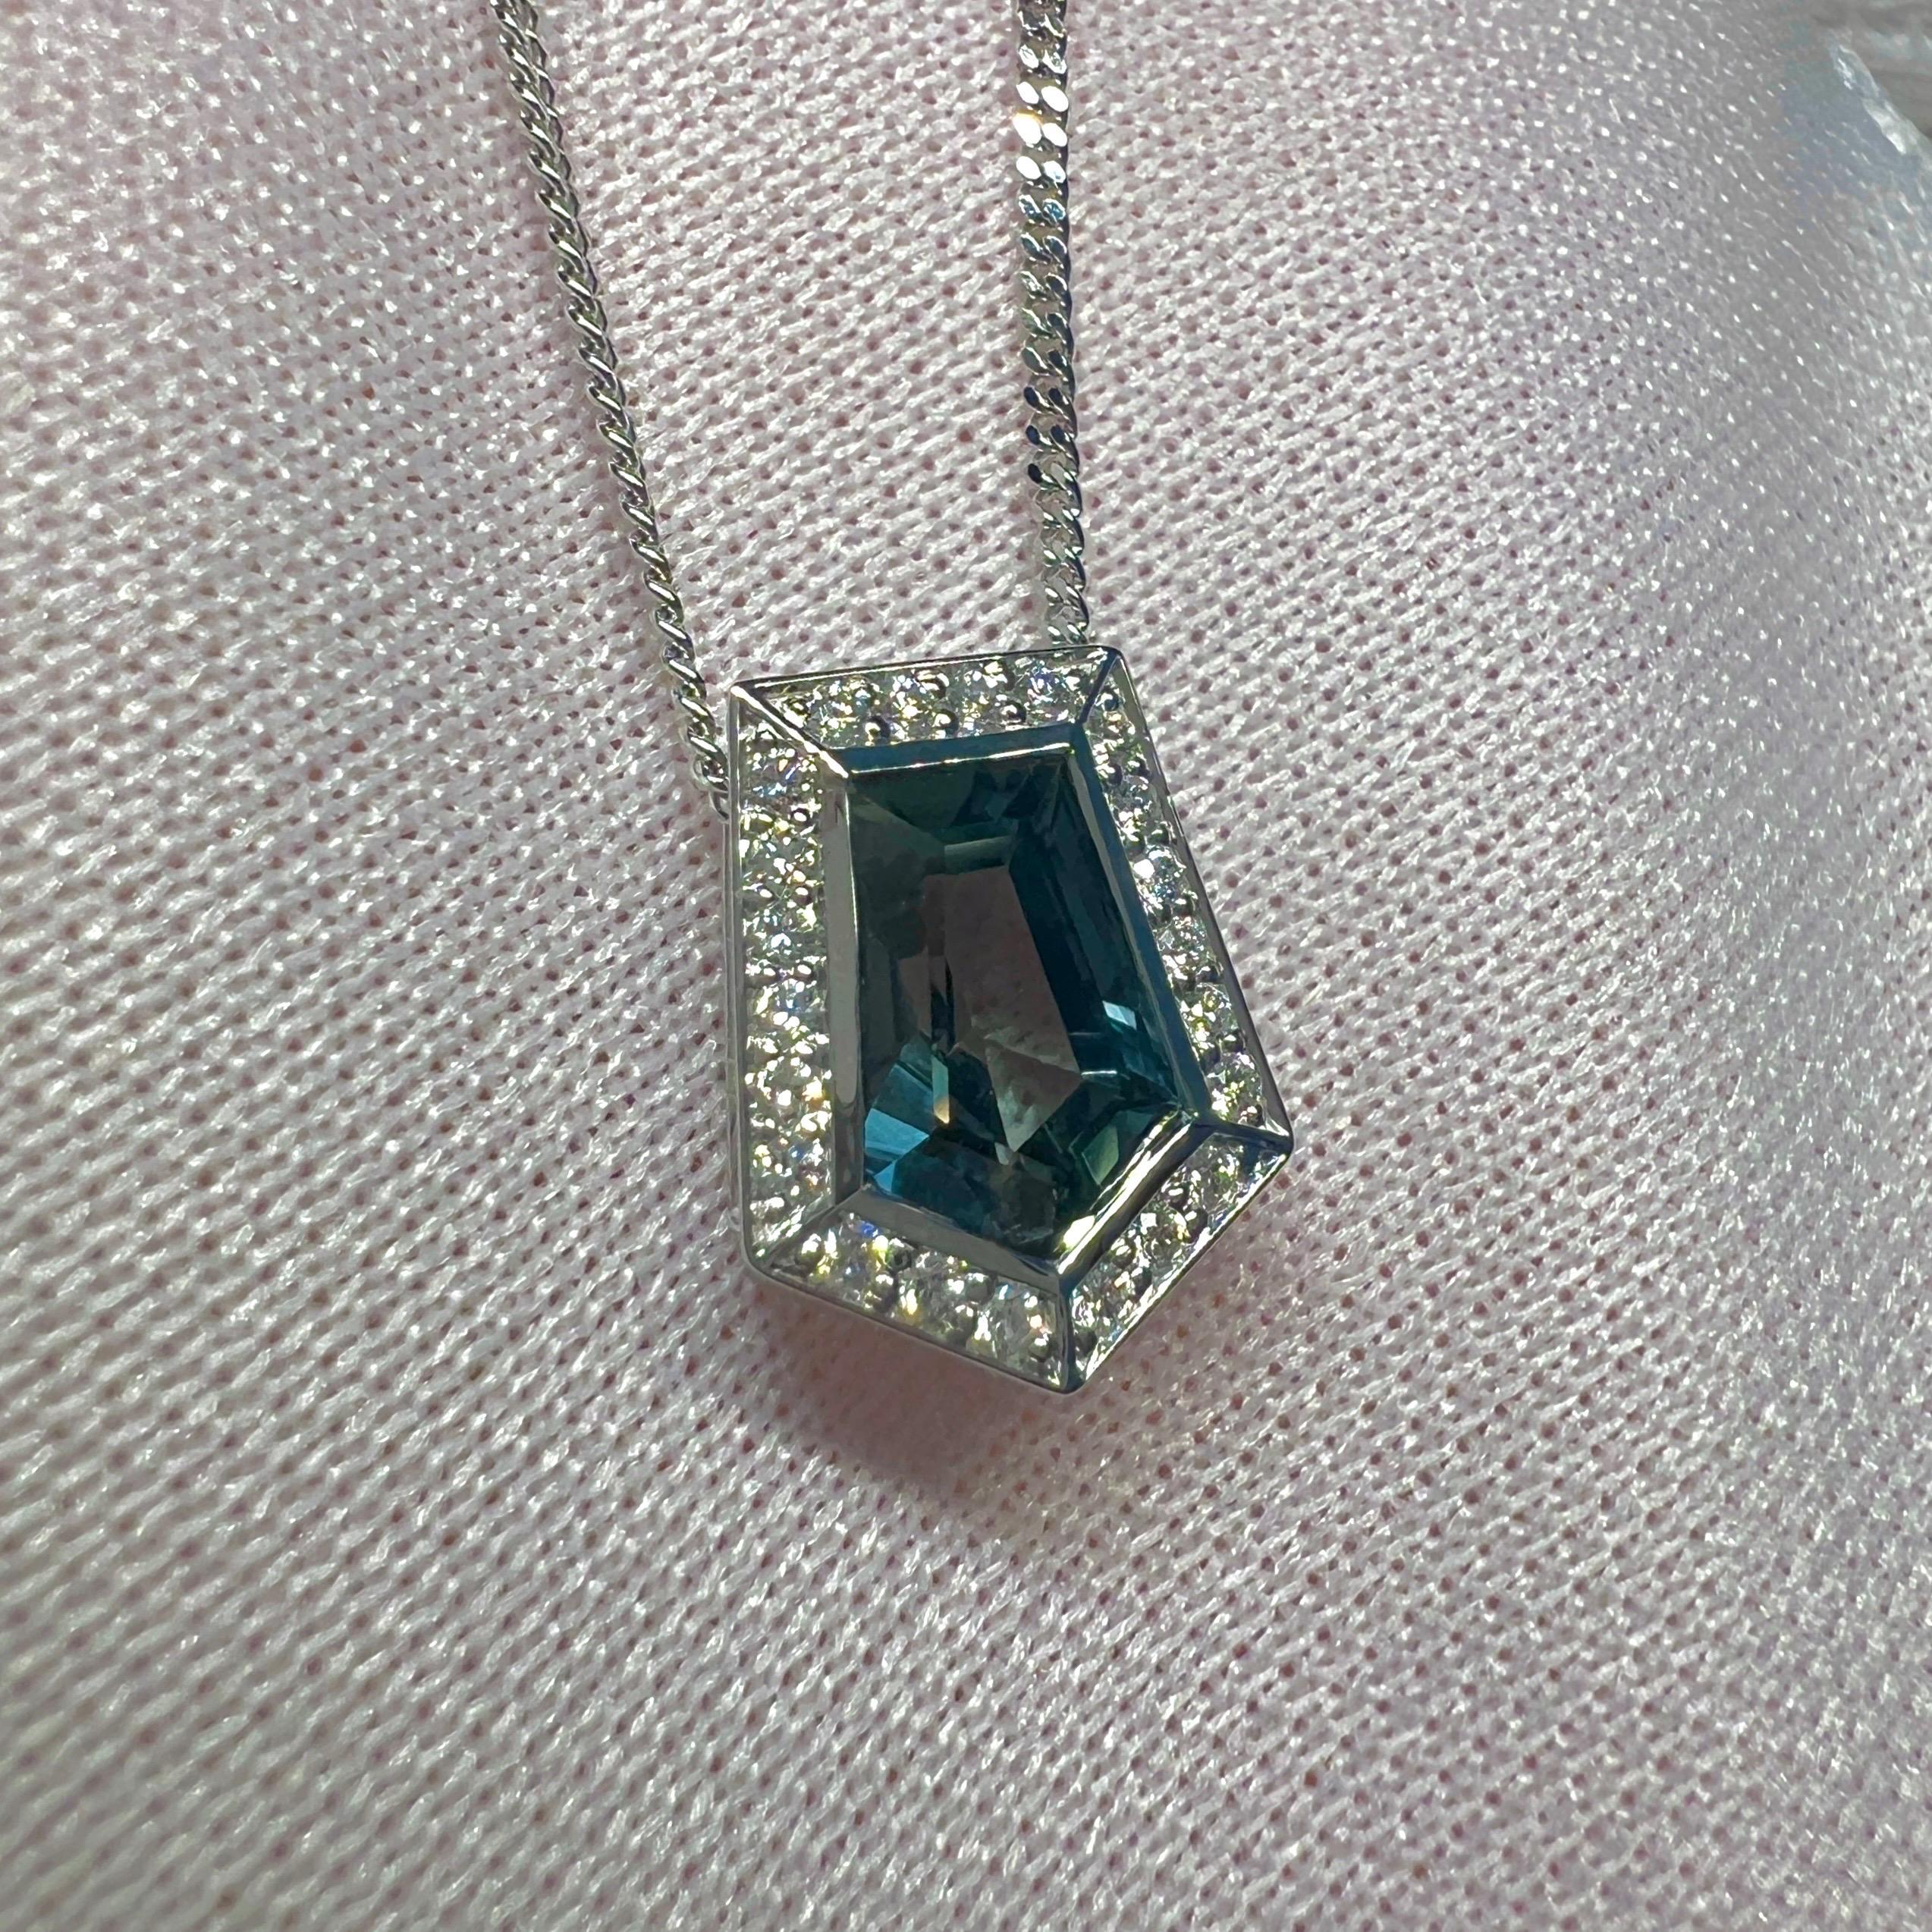 IGI Certified 1.46ct Colour Change Untreated Fancy Cut Sapphire Diamond Pendant For Sale 3